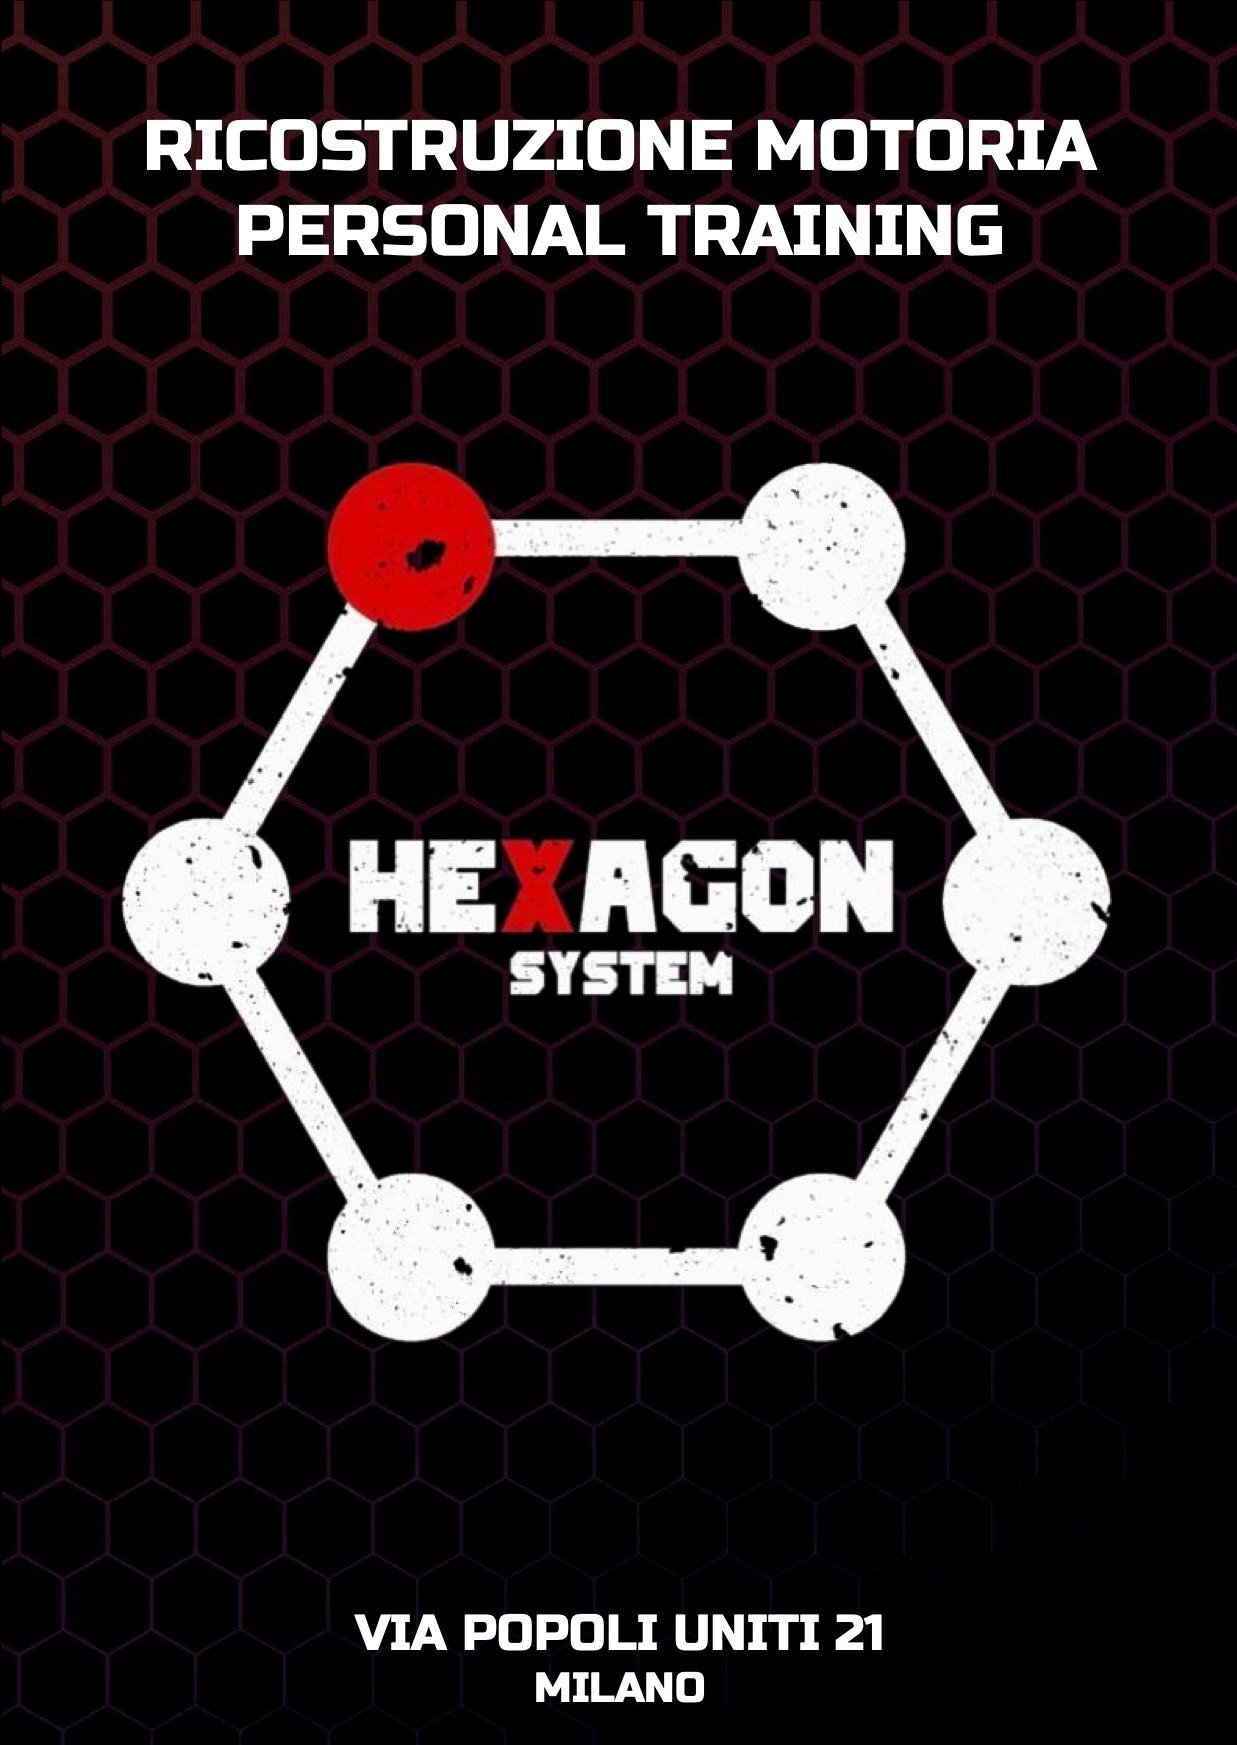 HEXAGON